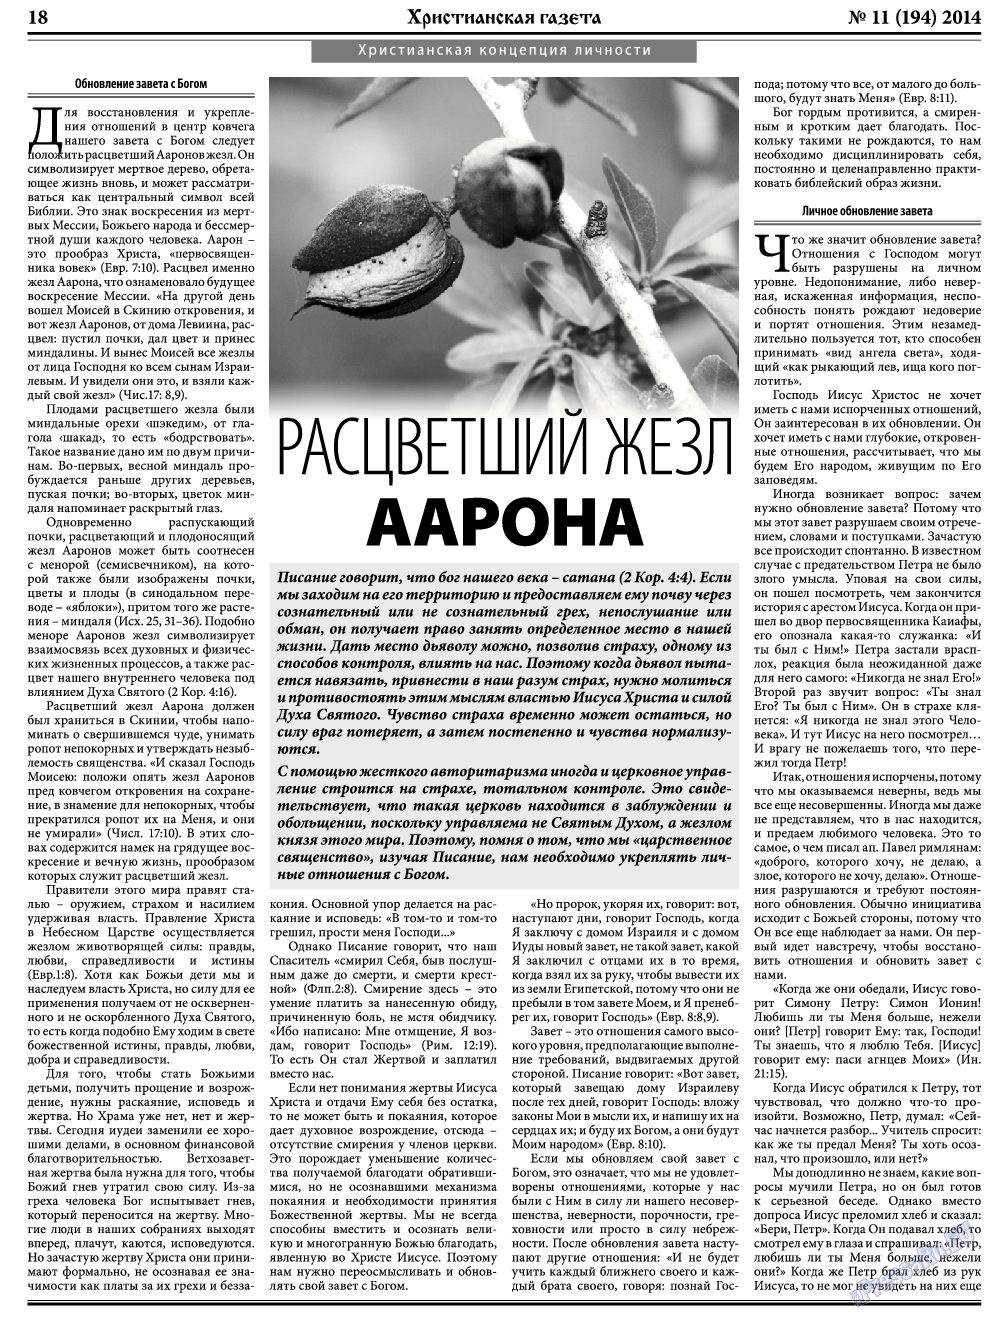 Христианская газета, газета. 2014 №11 стр.26